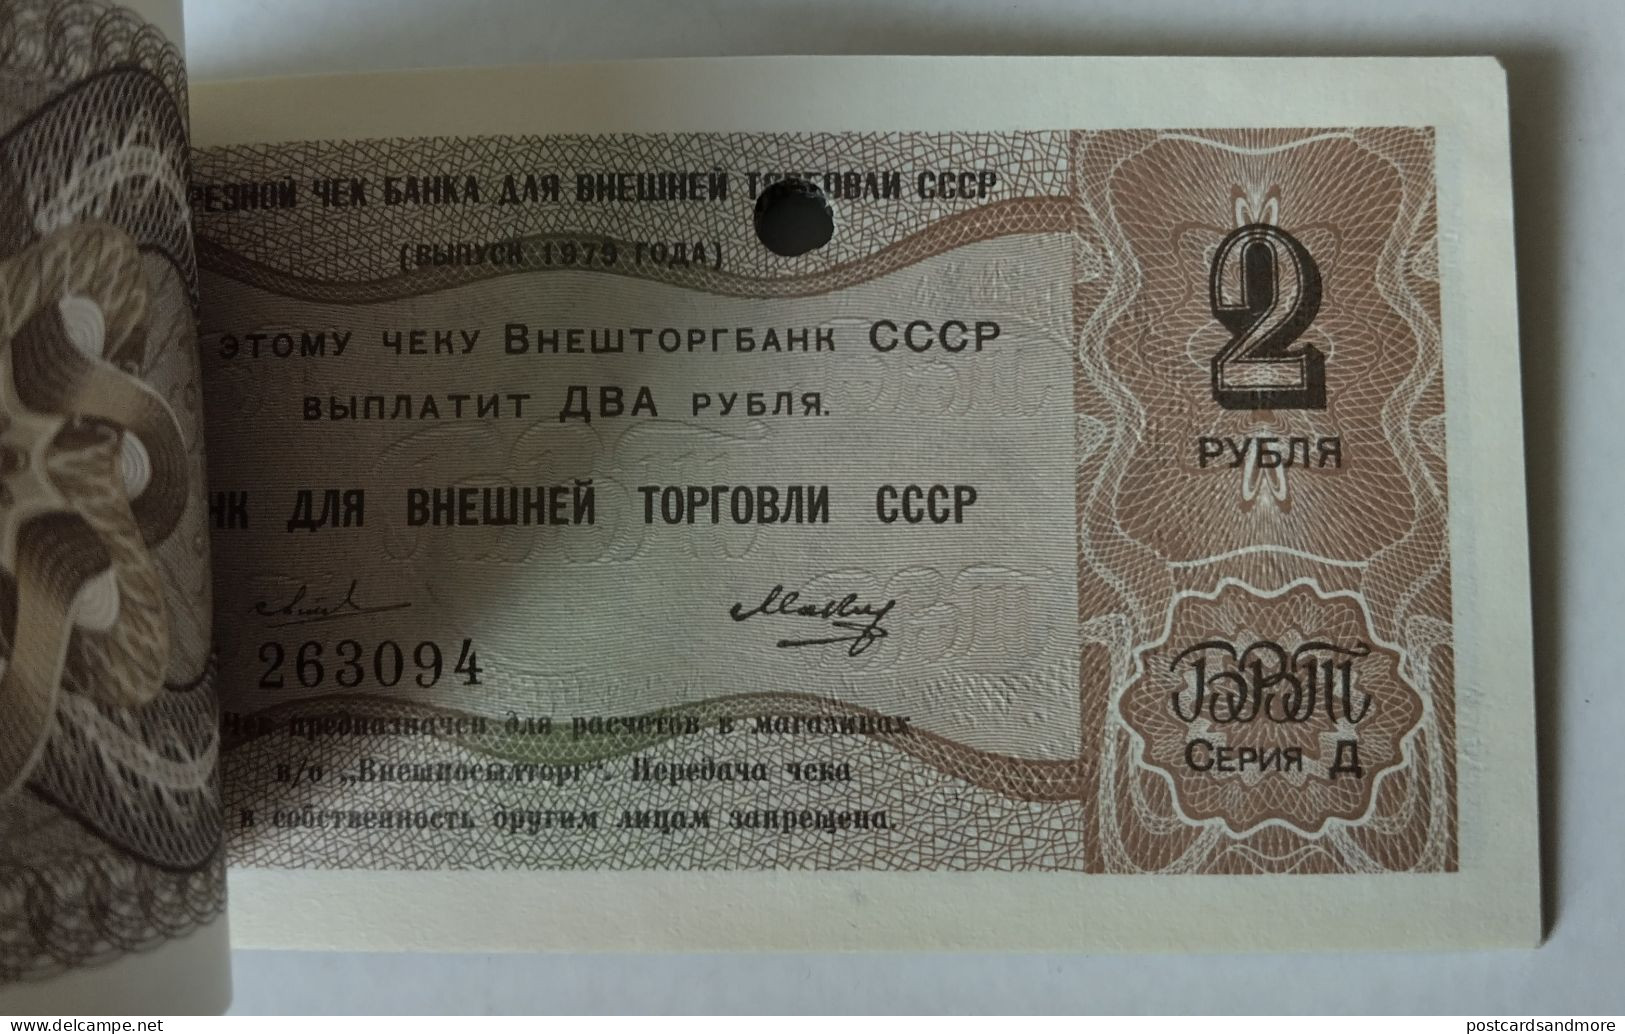 Russia Vneshtorgbank complete checkbook 36 checks 1 Kopek - 5 Rubles 1979 Series D Diplomatic checks Pick FX146d-FX154d